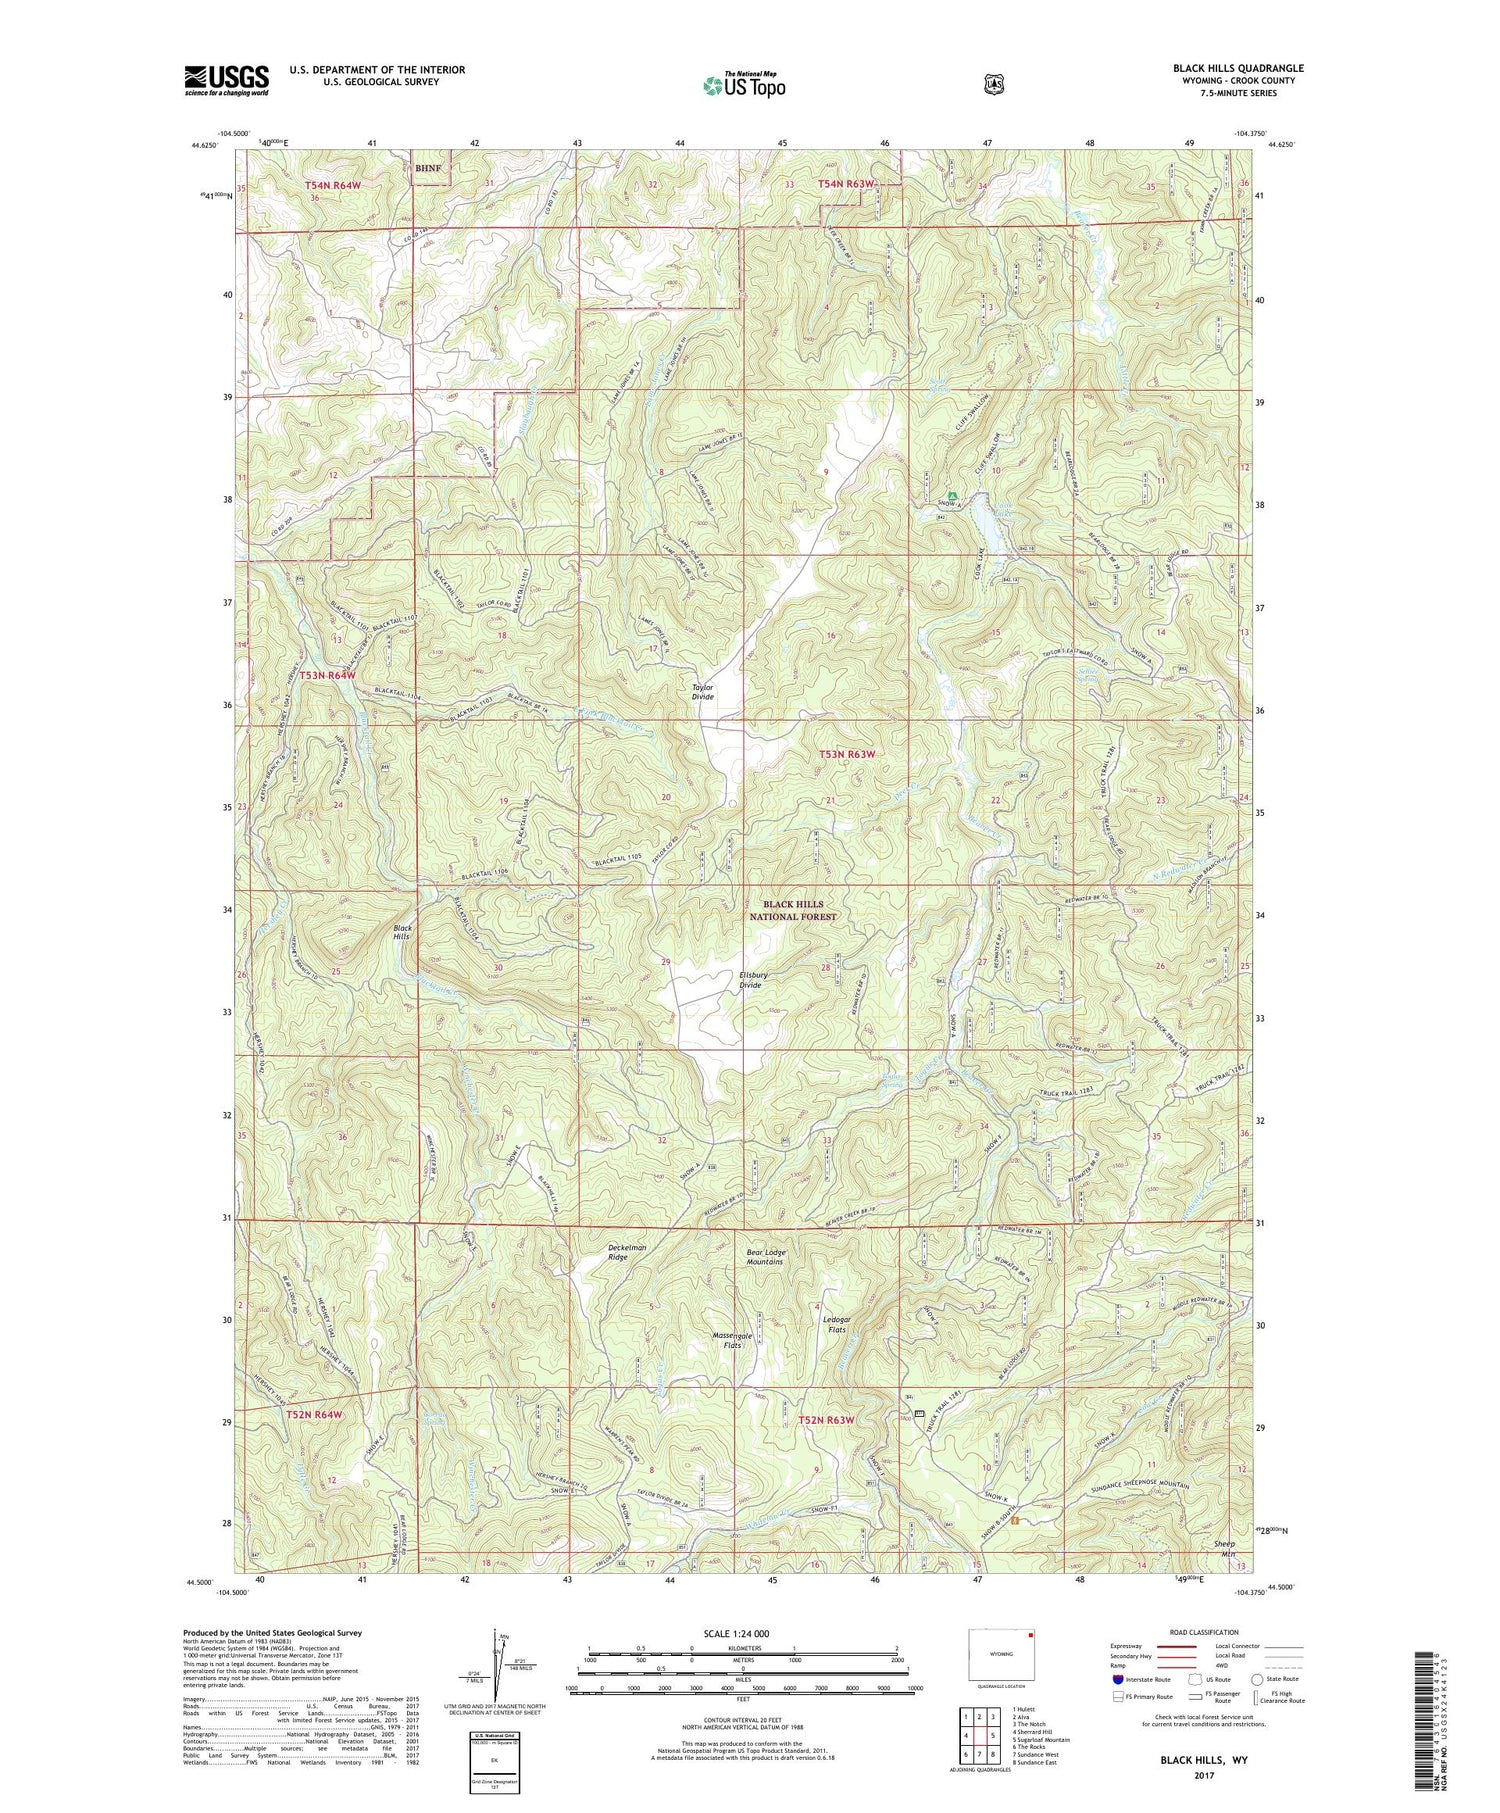 Black Hills Wyoming US Topo Map Image